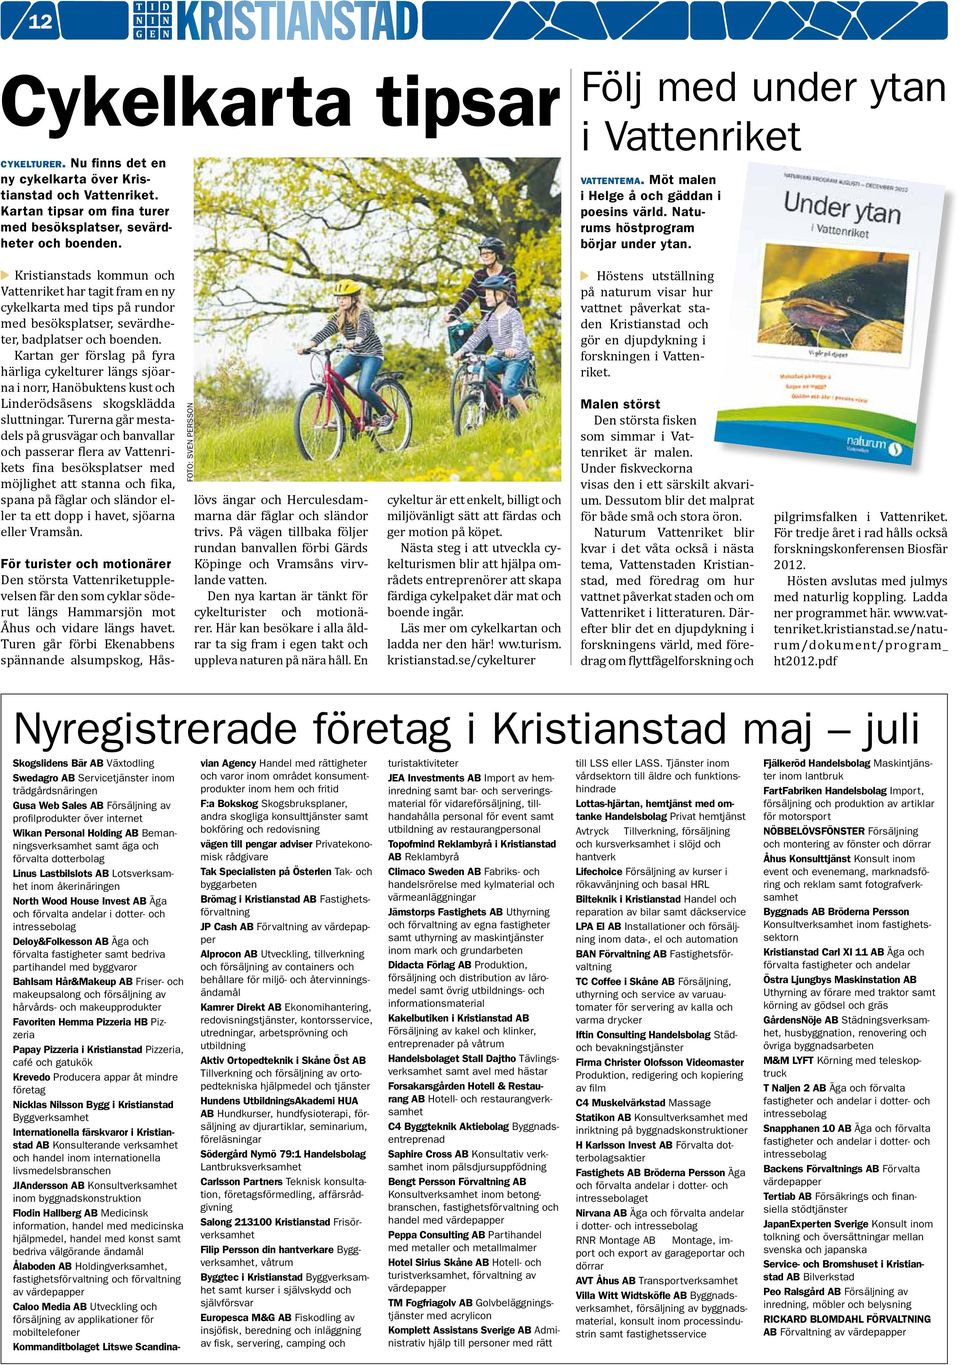 Kristianstads kommun och Vattenriket har tagit fram en ny cykelkarta med tips på rundor med besöksplatser, sevärdheter, badplatser och boenden.